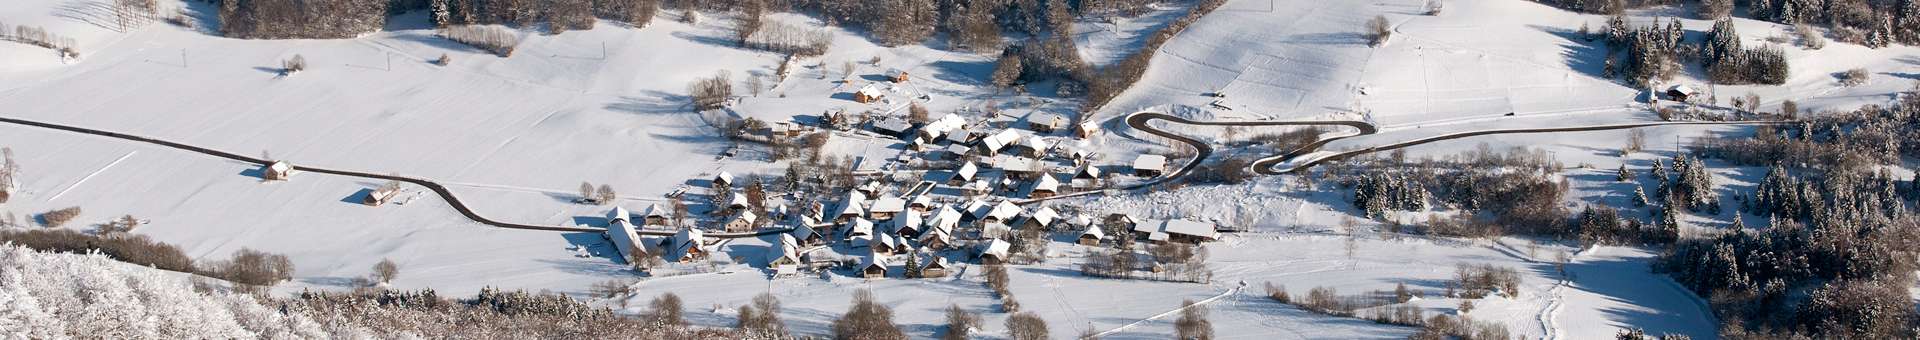 villages-bauges-hiver-916